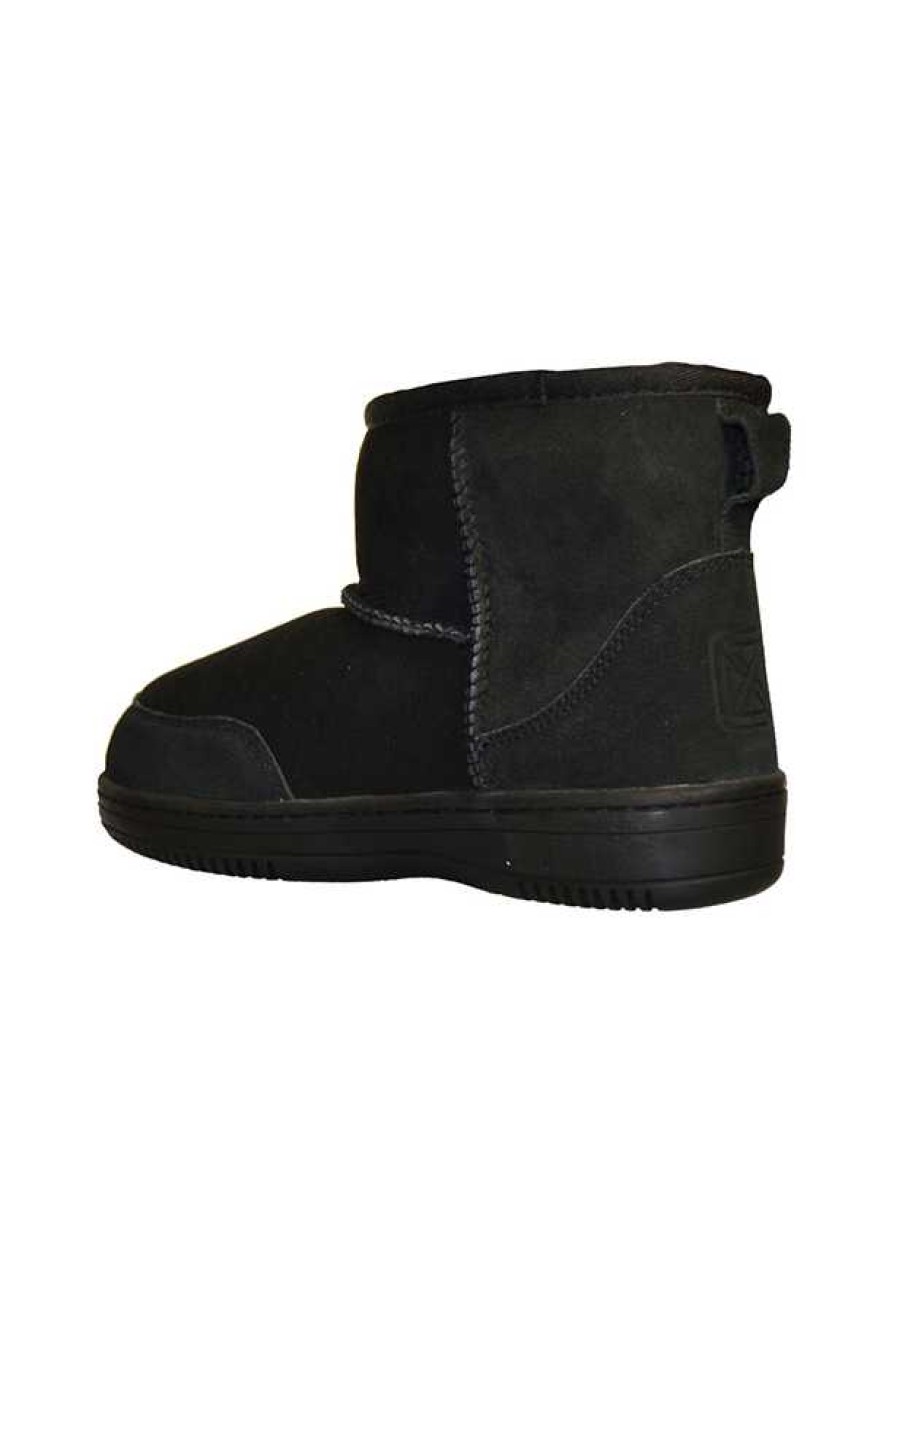 Women New Zealand Boots Boots | New Zealand Boots - Black ⋆ Apairsshoes